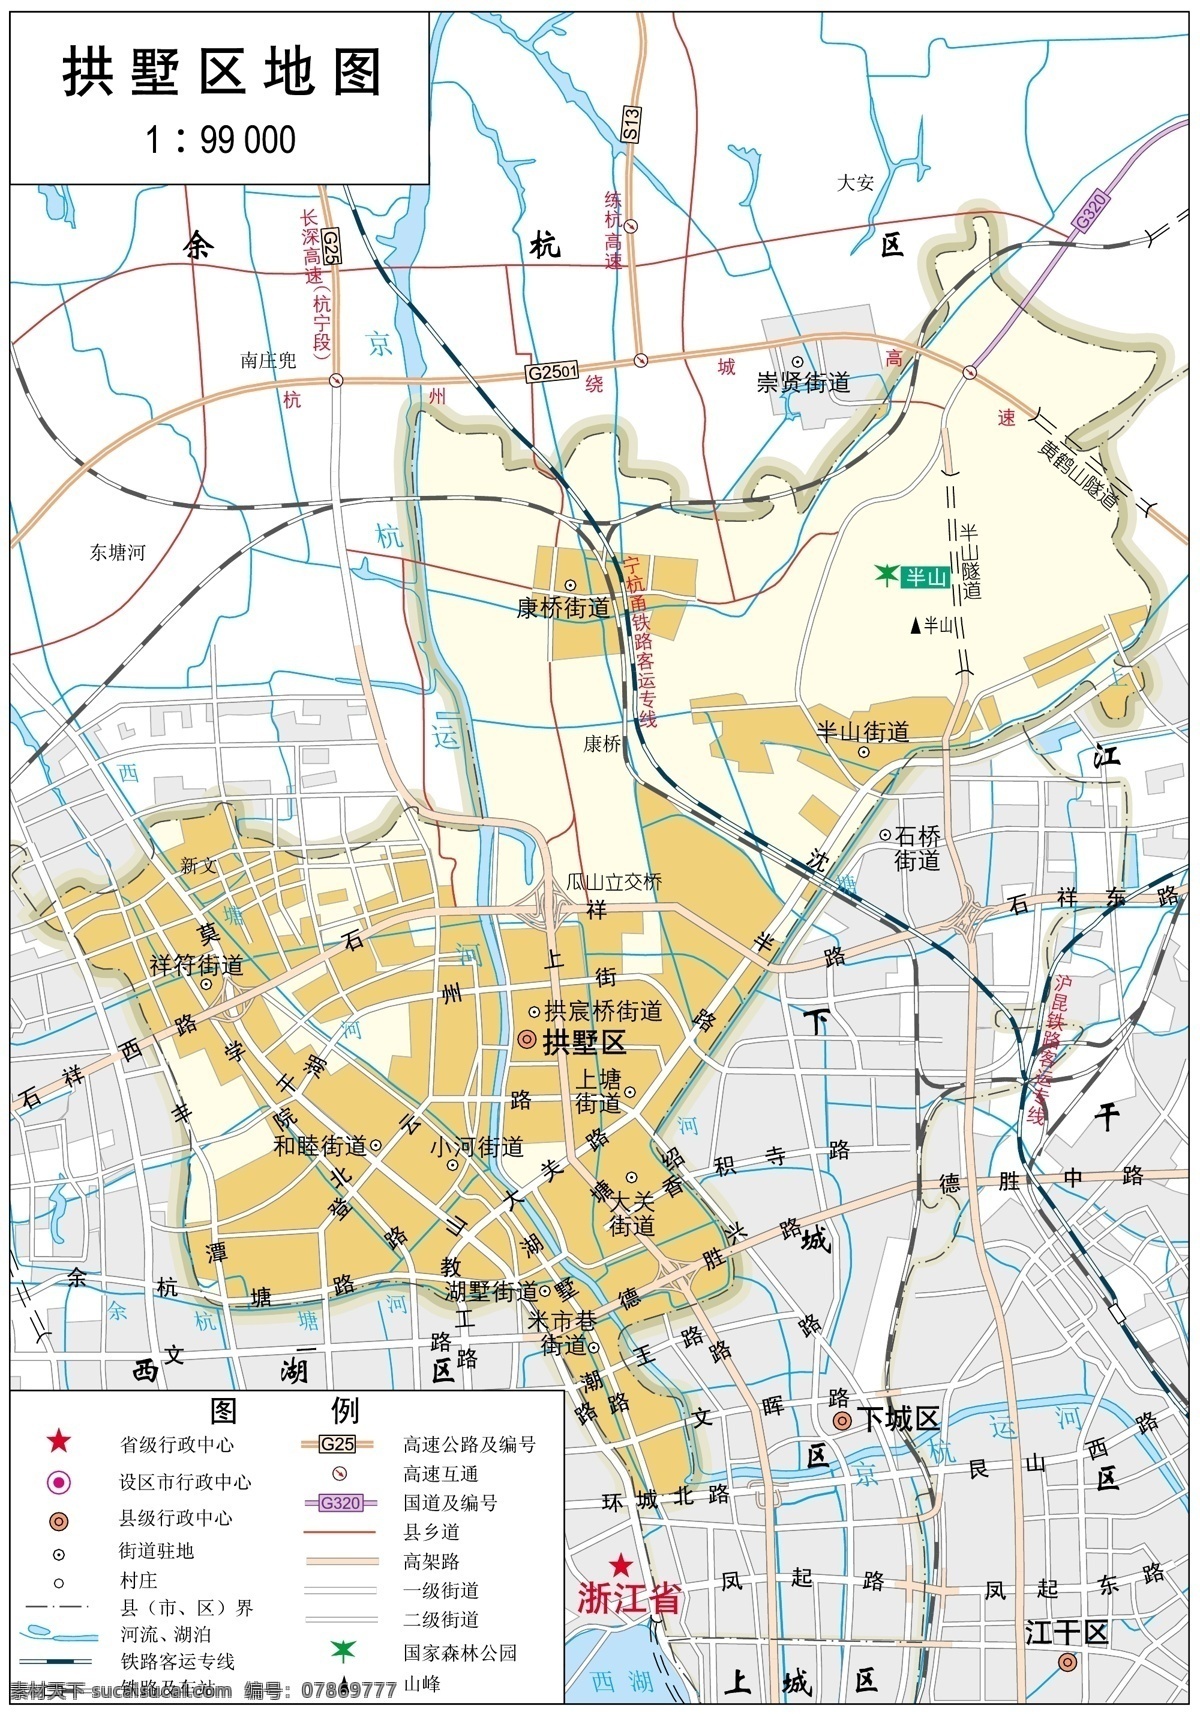 浙江 杭州市 拱墅区 标准 地图 32k 杭州市地图 标准地图 地图模板 杭州地图 拱墅区地图